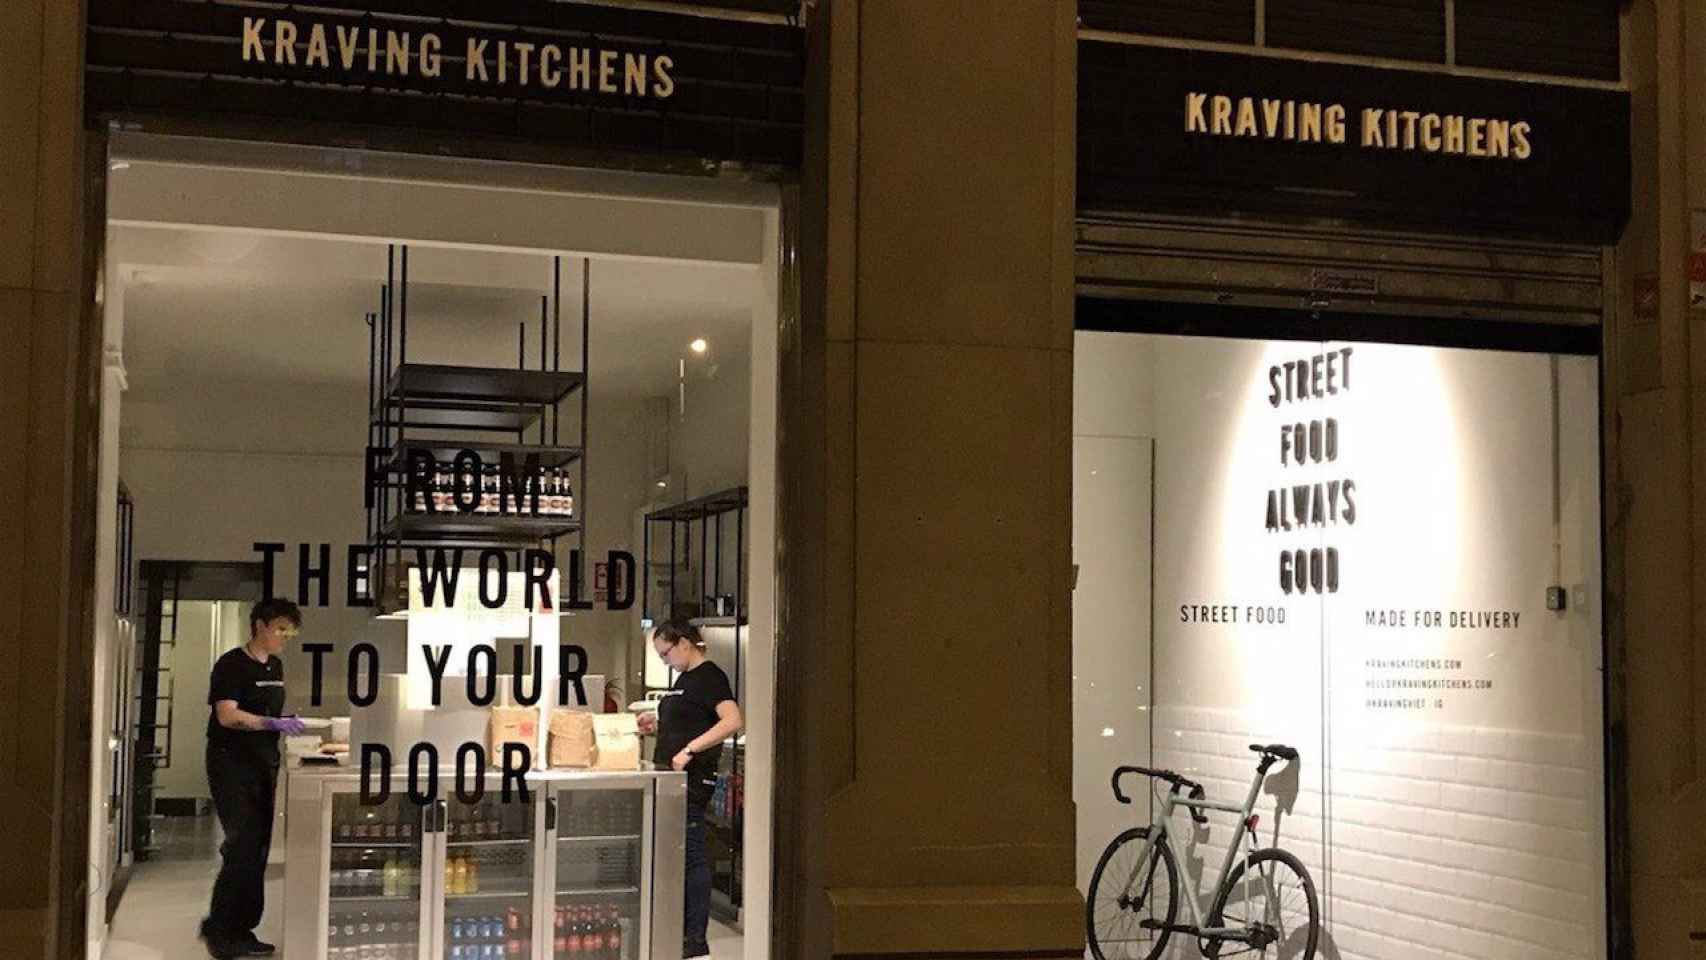 La 'cocina fantasma' Kraving Kitchens en su sede de Barcelona / KRAVING KITCHENS VÍA EUROPA PRESS